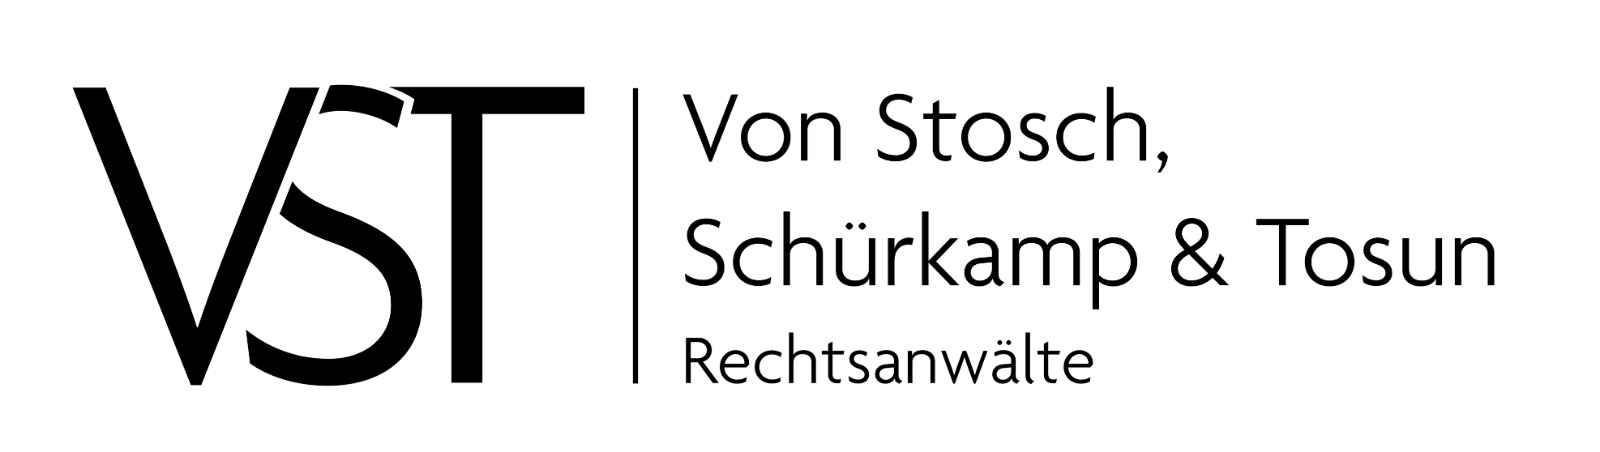 Rechtsanwälte Von Stosch, Schürkamp & Tosun